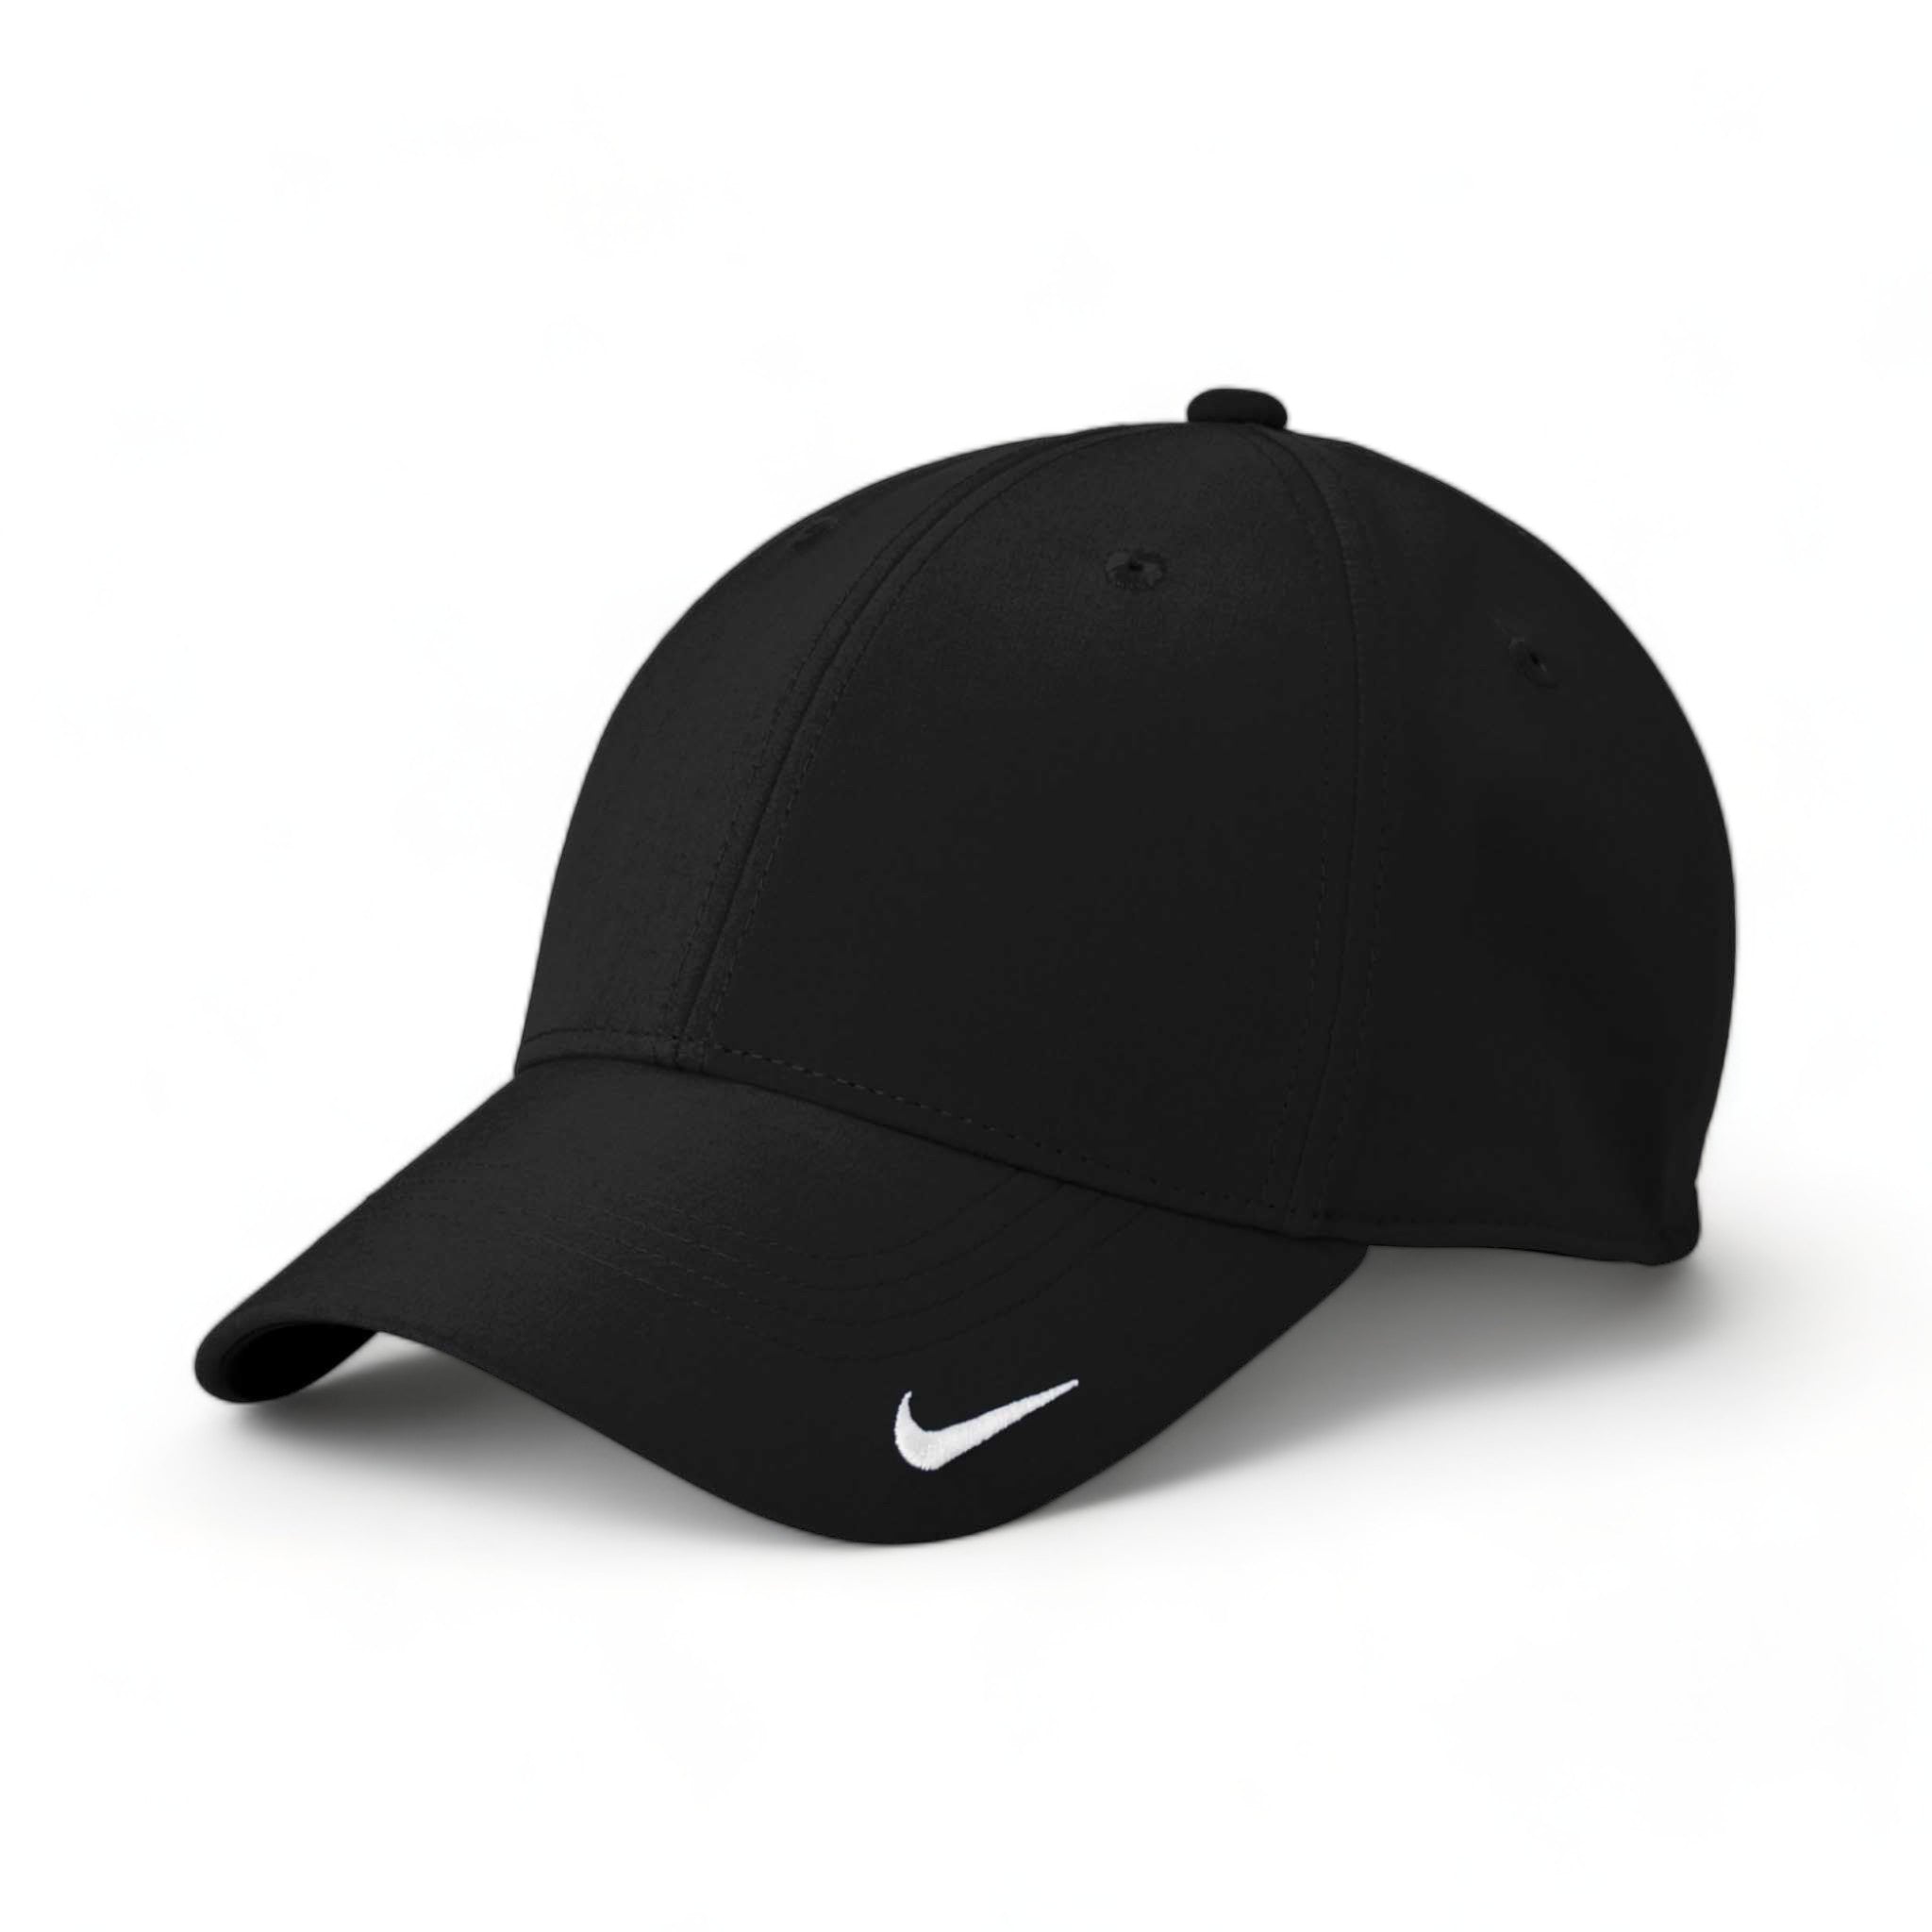 Side view of Nike NKFB6447 custom hat in black